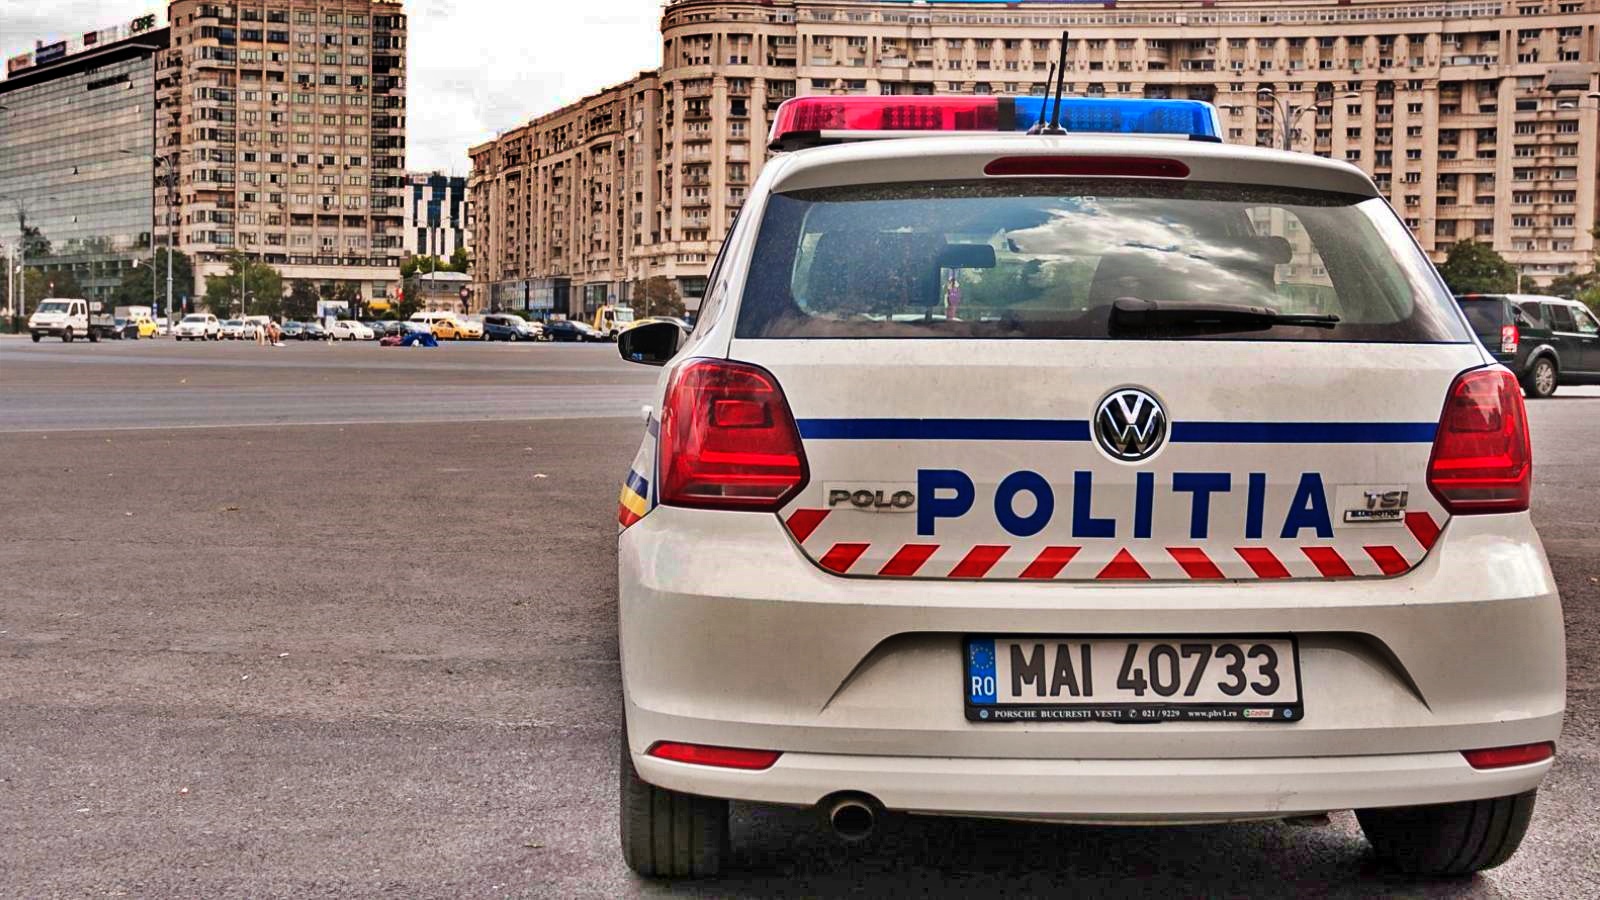 Roemeense politie De boodschap voor miljoenen Roemenen in het hele land